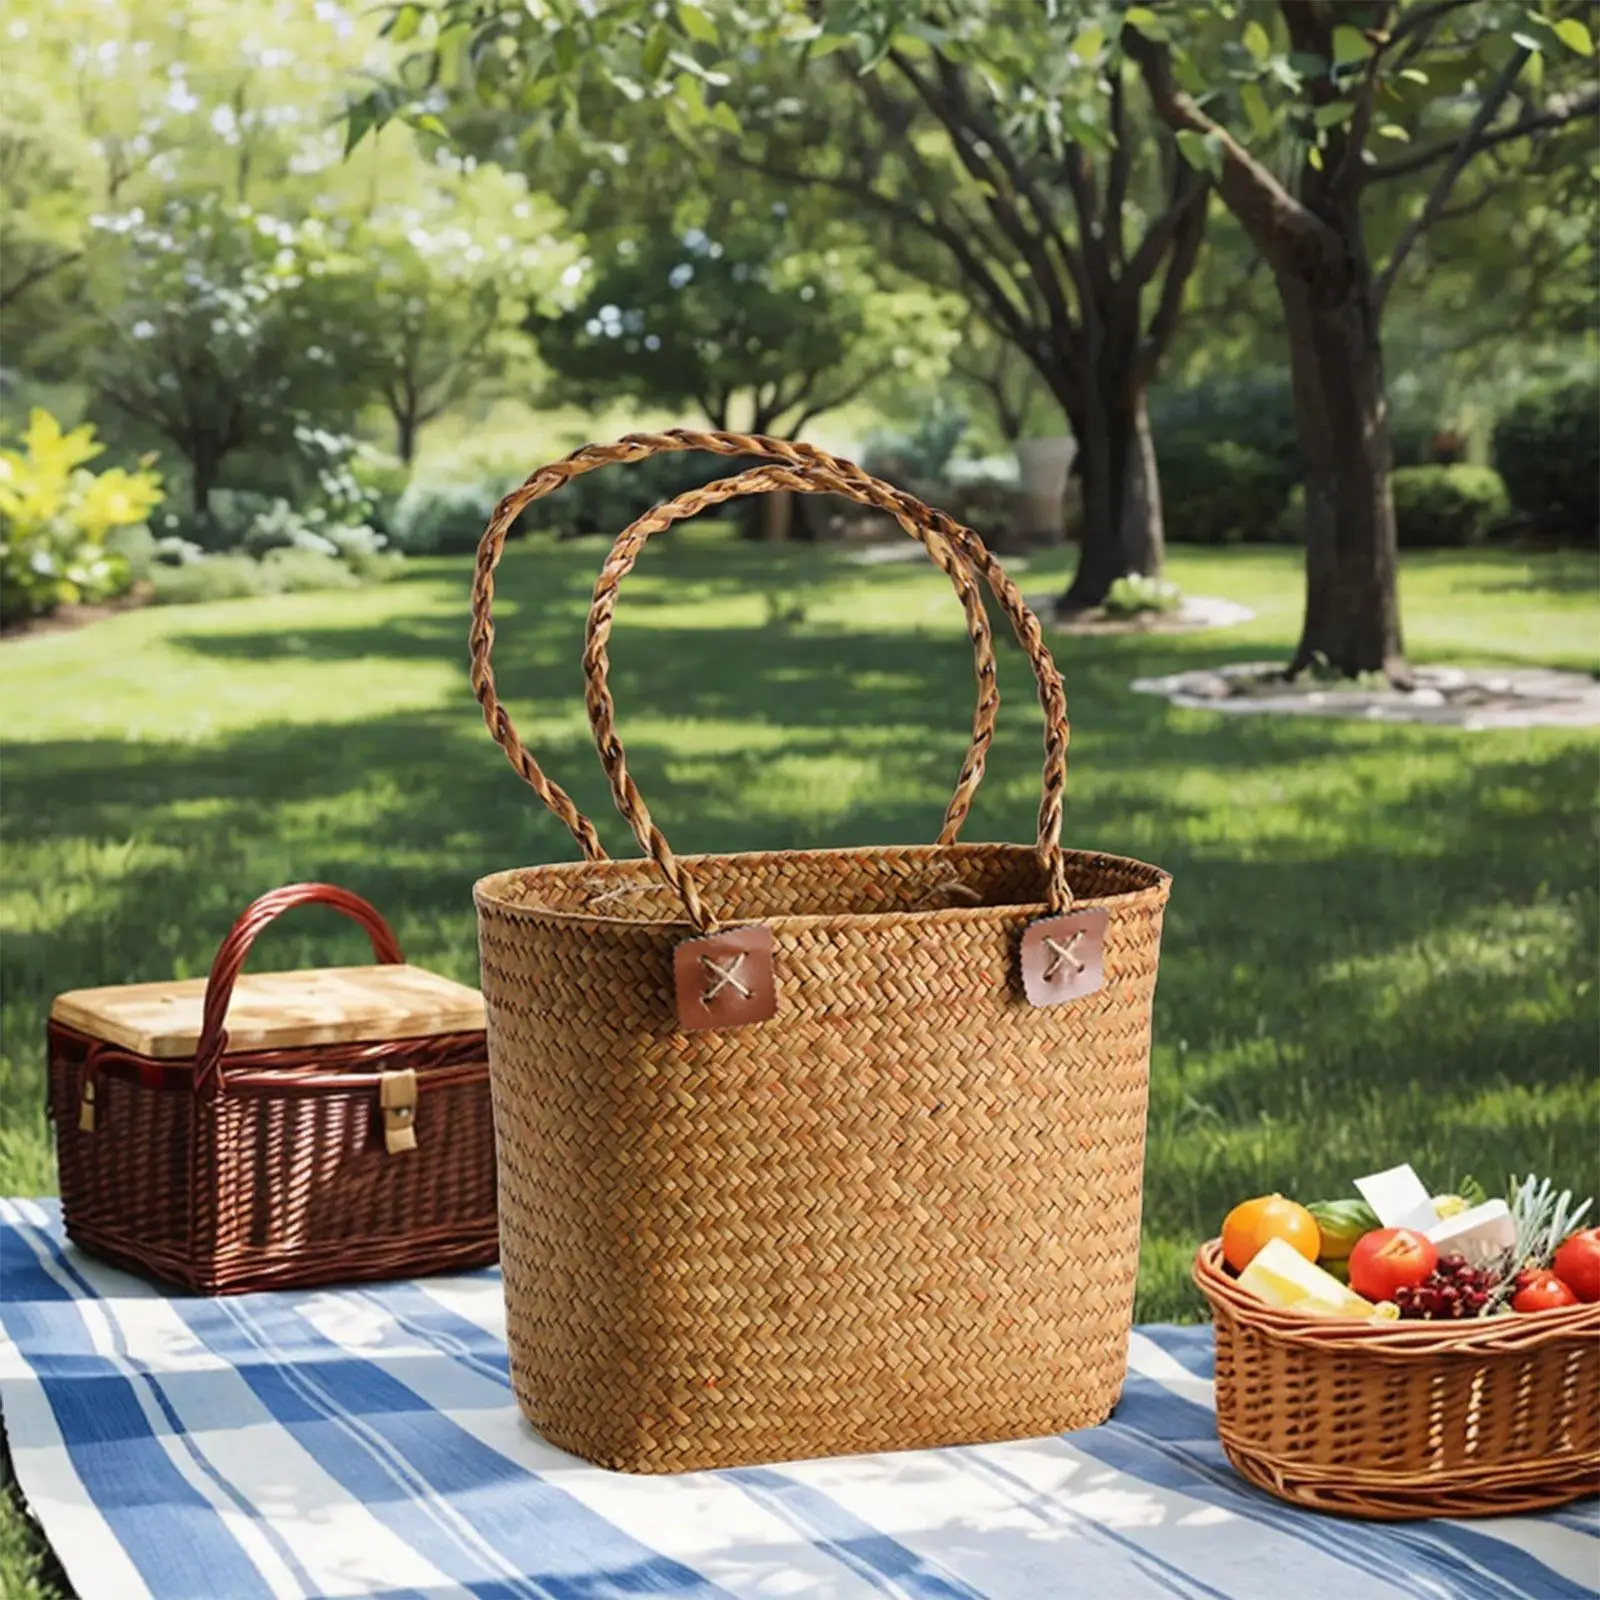 Handwoven Storage Basket Portable Camping Beach Lightweight Bread Storage Basket